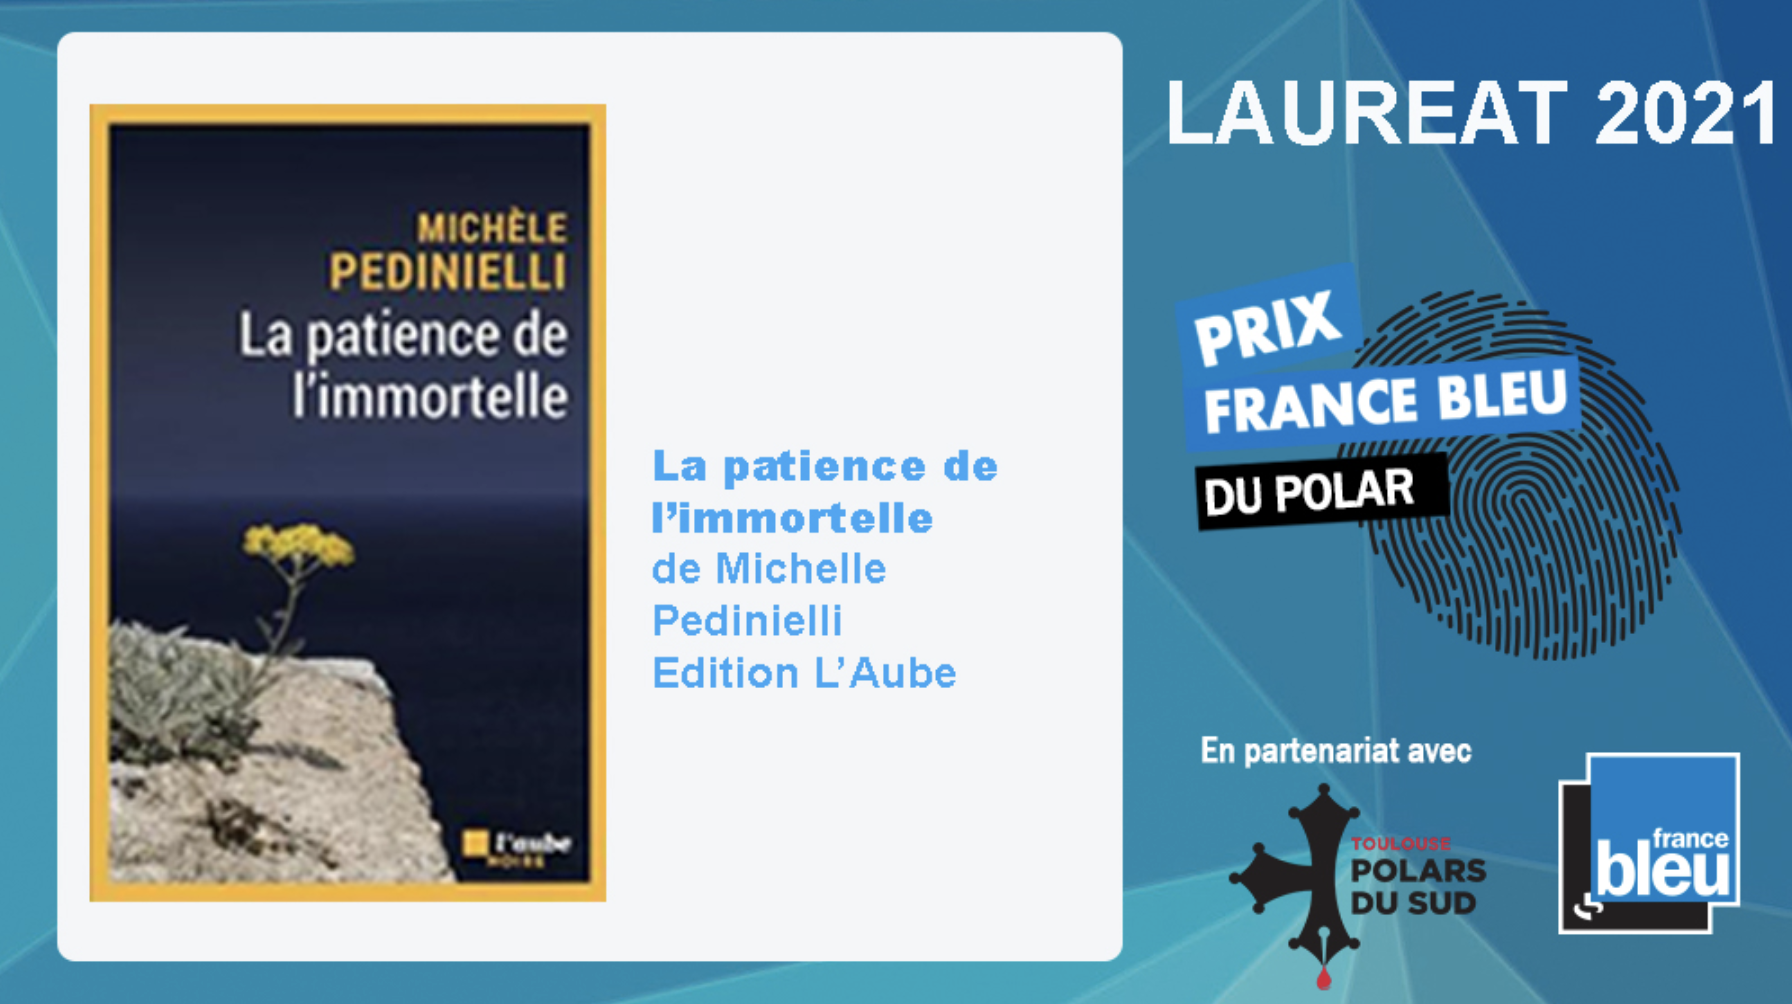 France Bleu décerne son Prix France Bleu du polar 2021